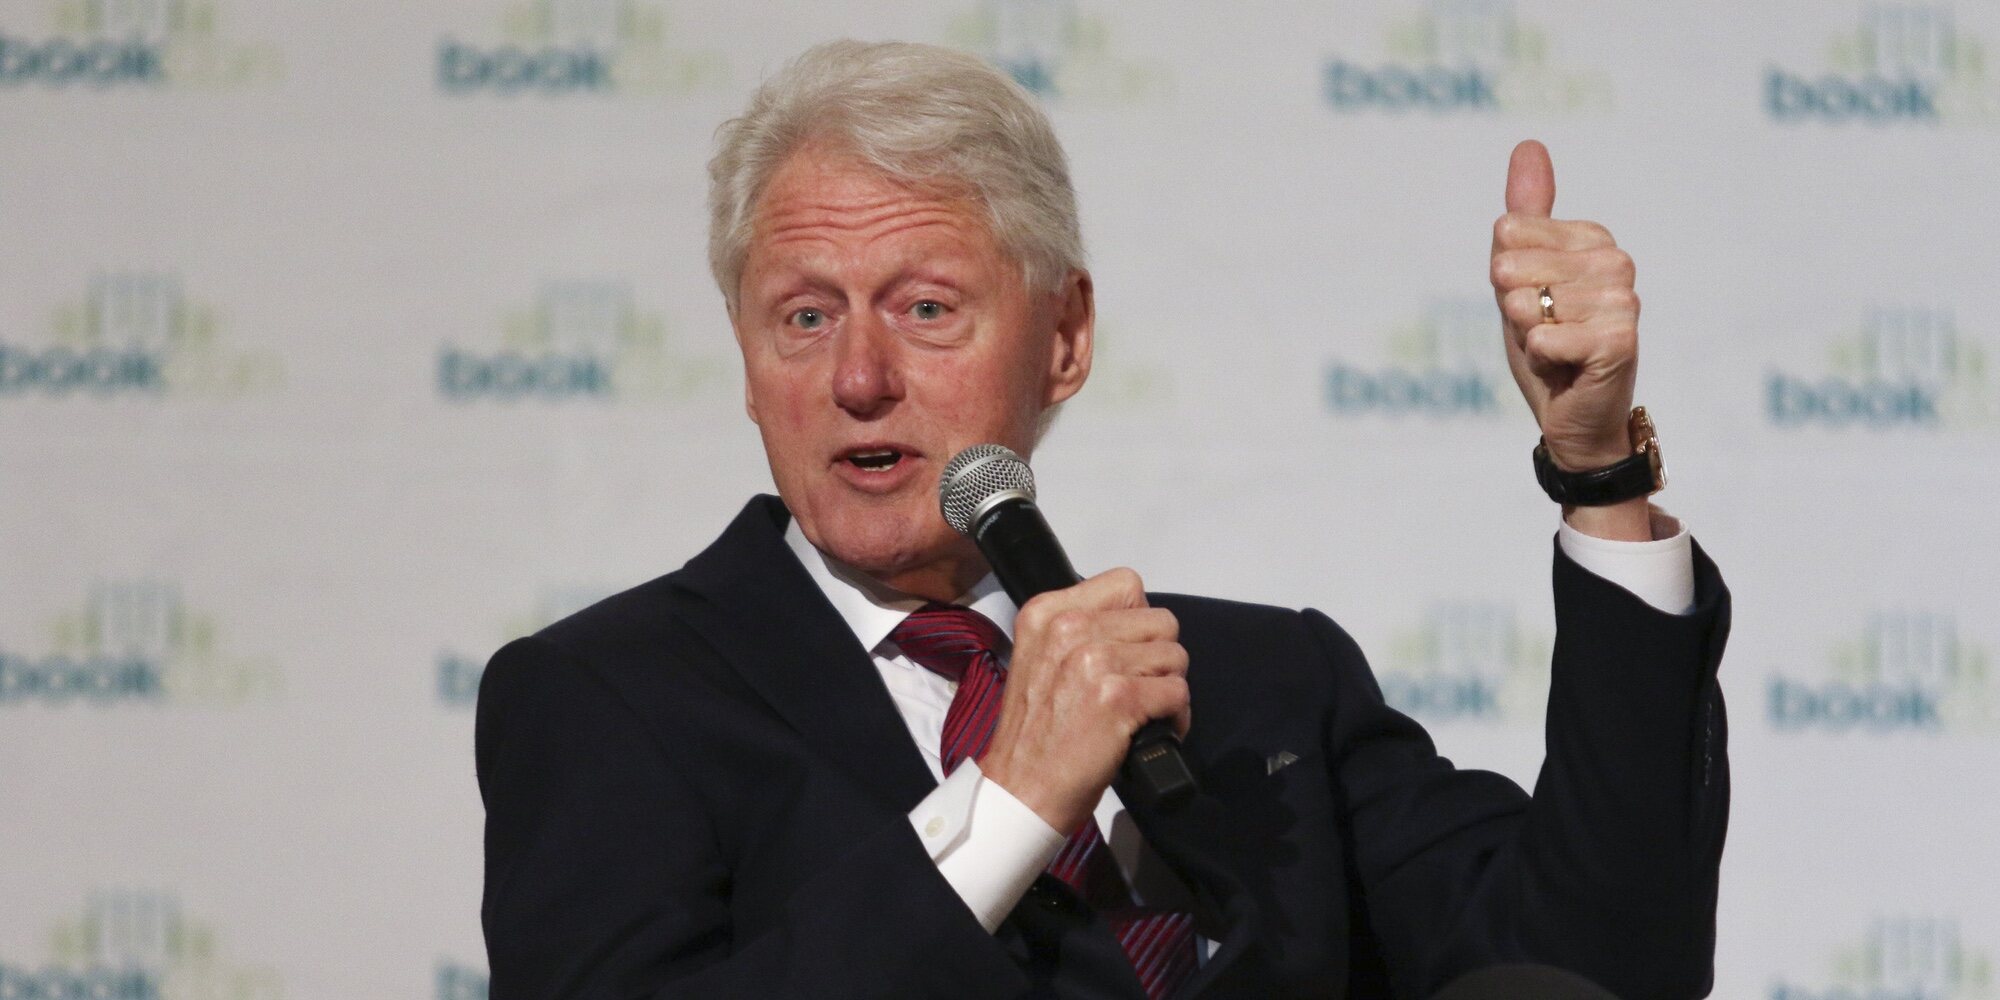 Bill Clinton recibe el alta hospitalaria tras 5 días ingresado por una infección en la sangre